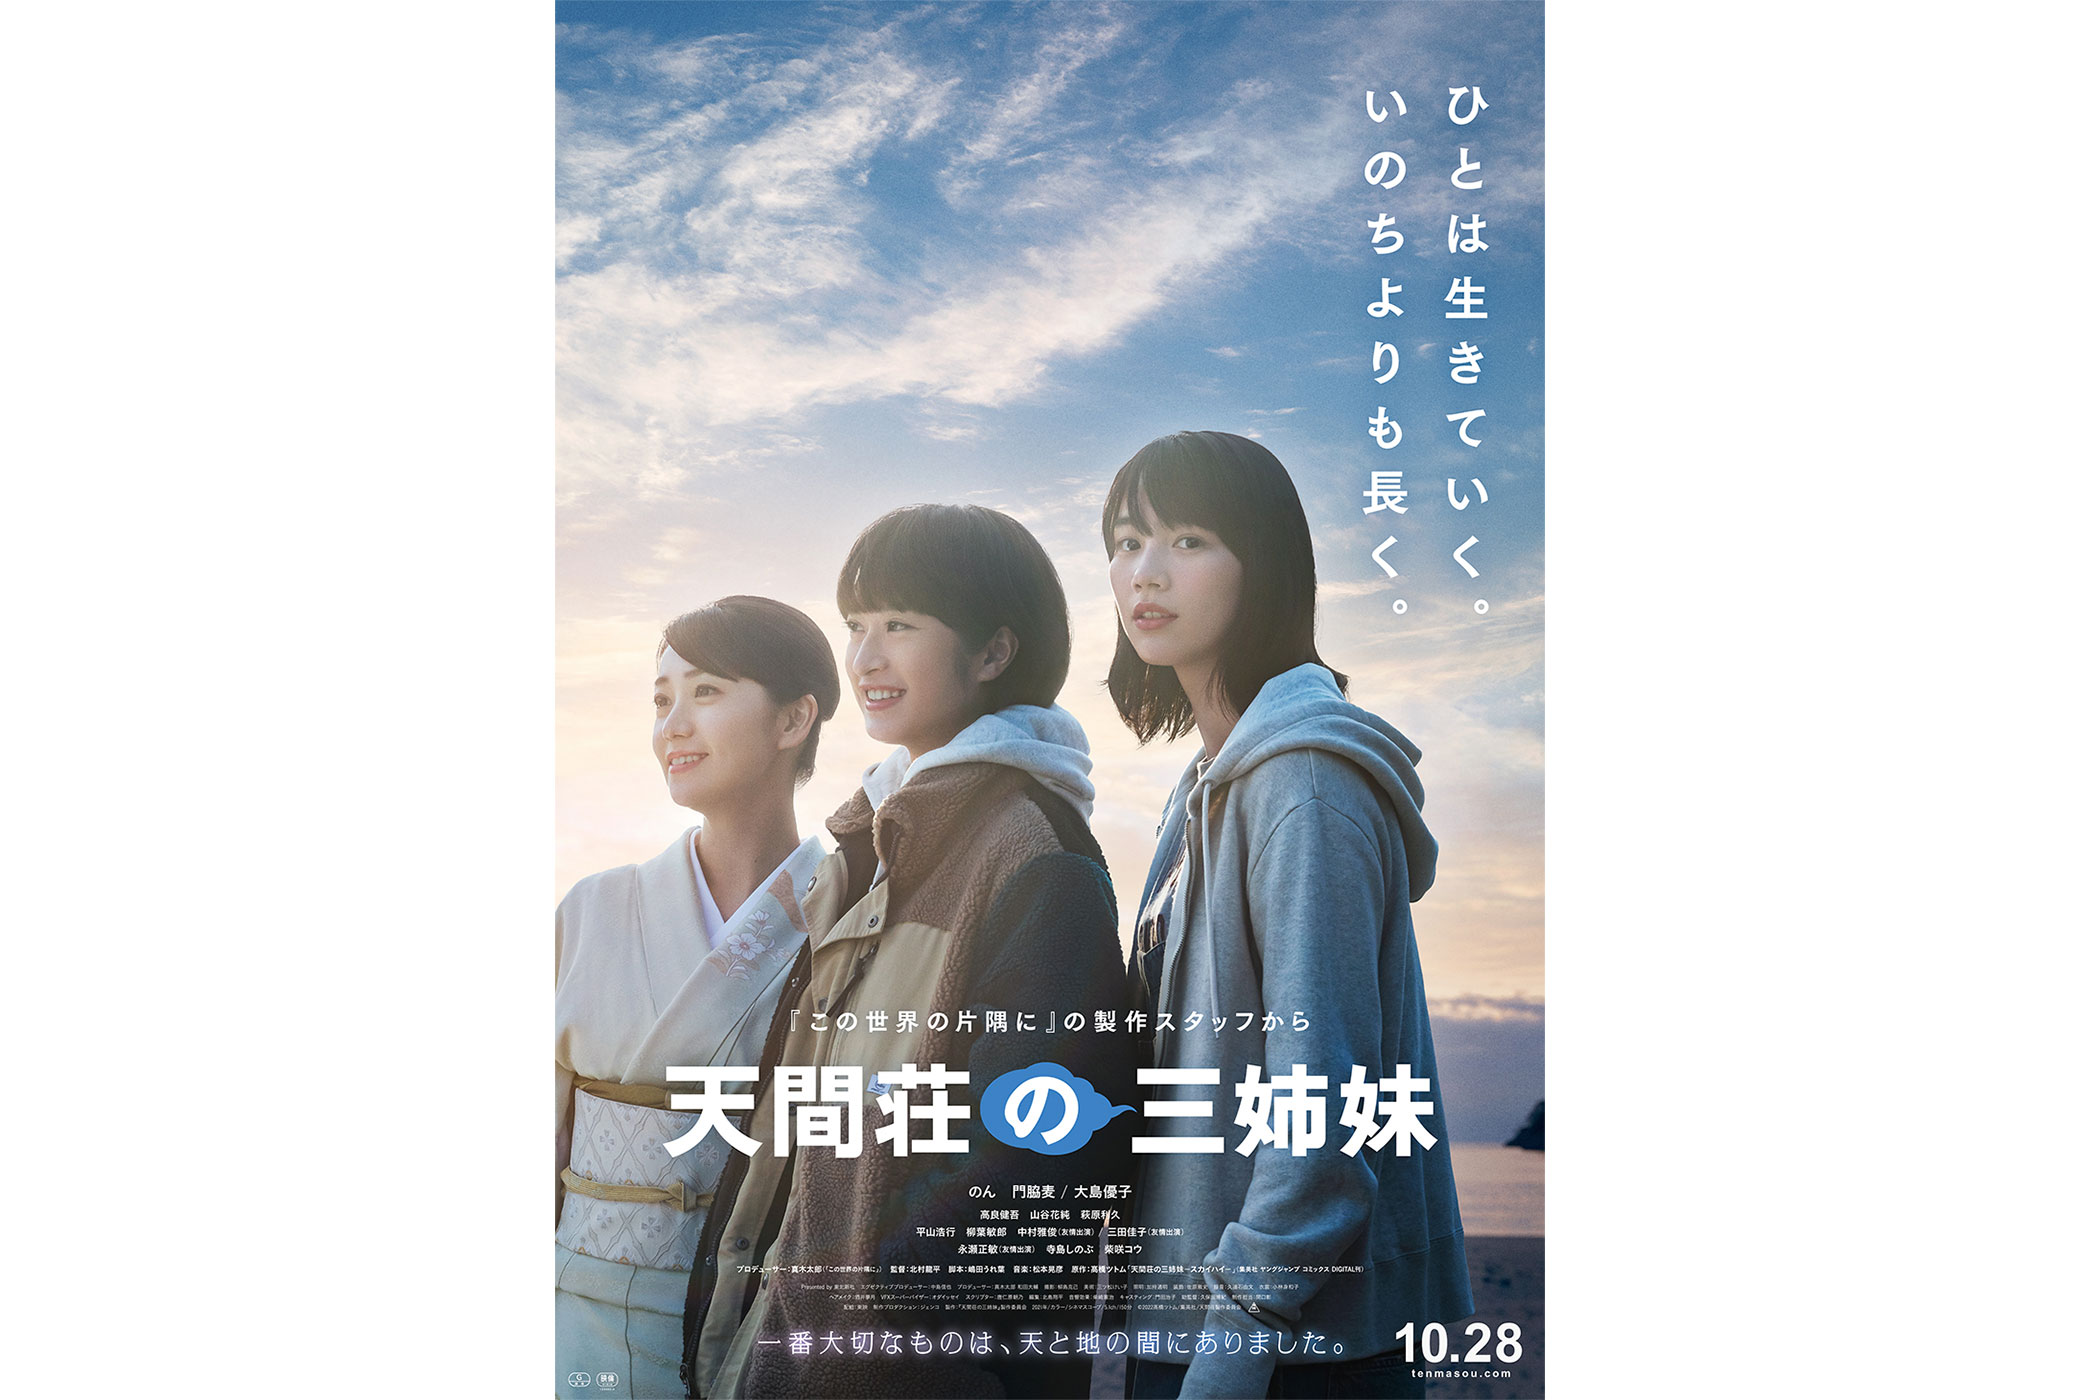 中村雅俊 映画 天間荘の三姉妹 出演のお知らせ 株式会社ノースプロダクション